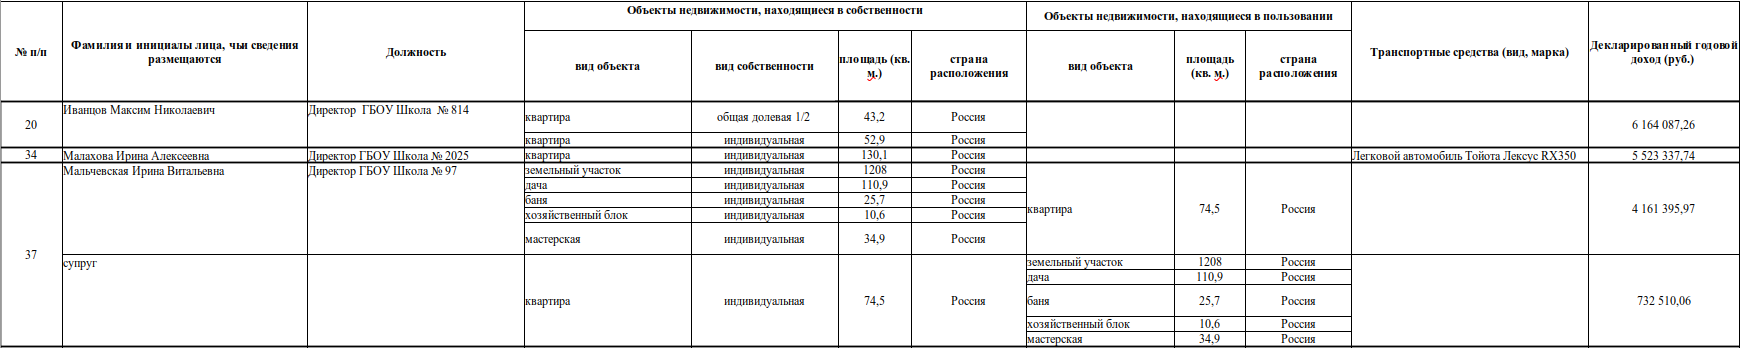 Руководители учреждений города Москвы - образовательные учреждения (все представленные сведения)